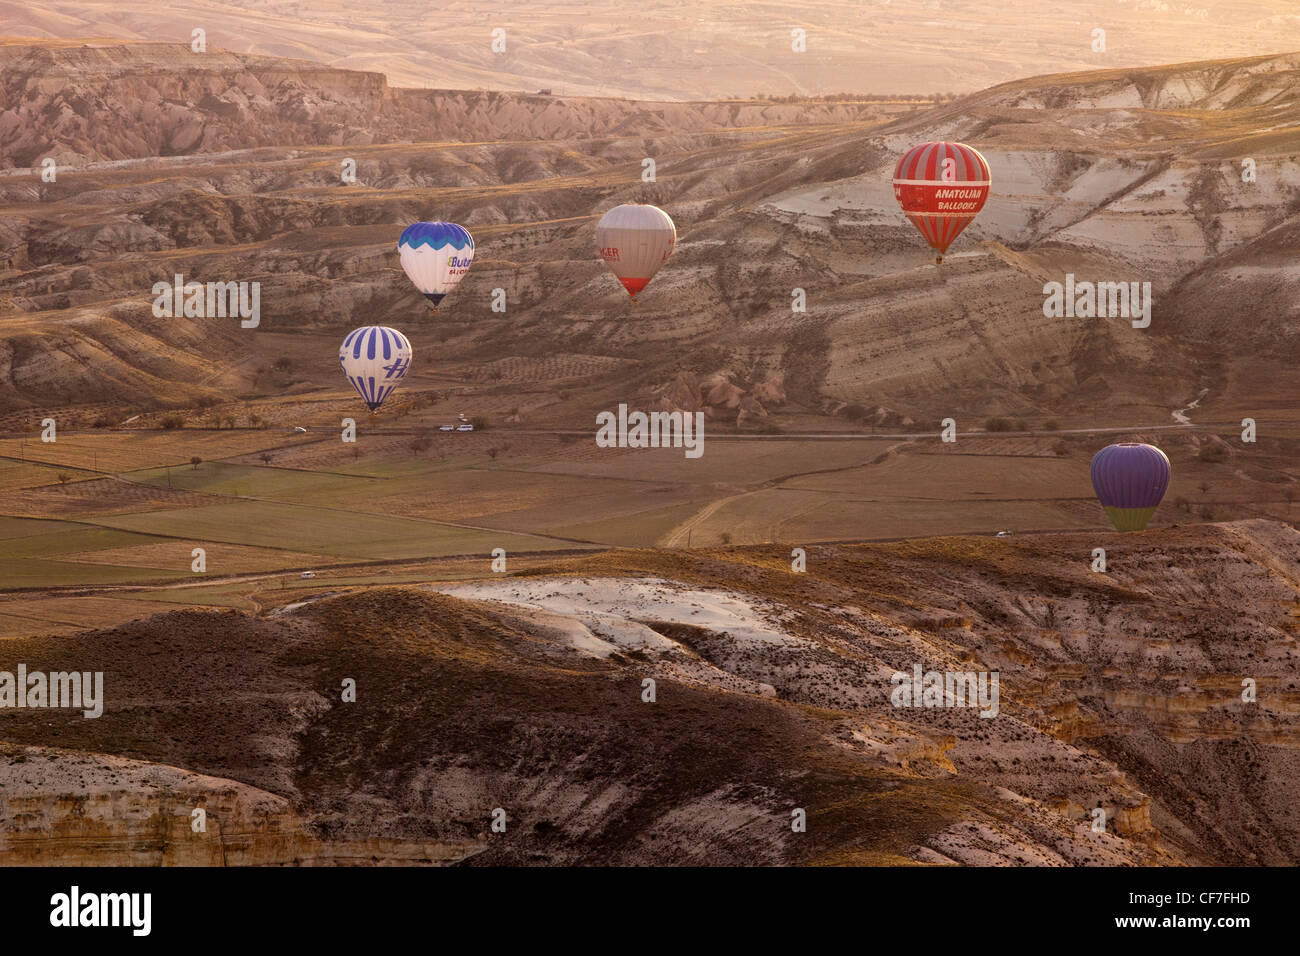 A morning view of the Hot Air Balloons at Cappadocia, Turkey Stock Photo